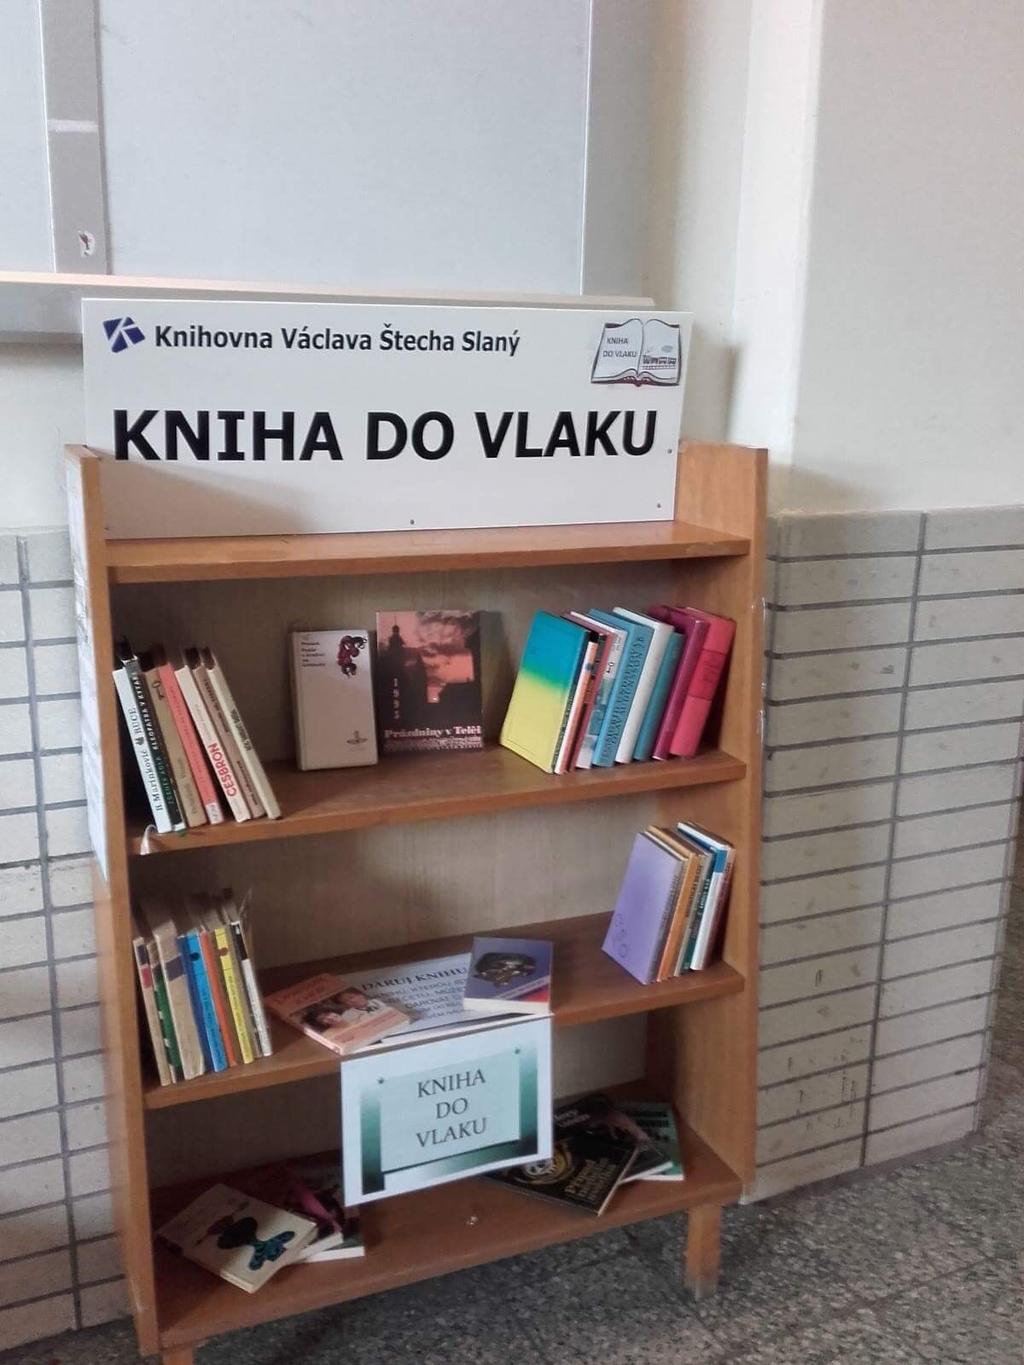 Městská knihovna chtěla tímto nabídnout cestujícím službu, která již funguje např. v zdravotnických zařízeních, ve veřejných parcích a v některých dalších institucích v ČR.